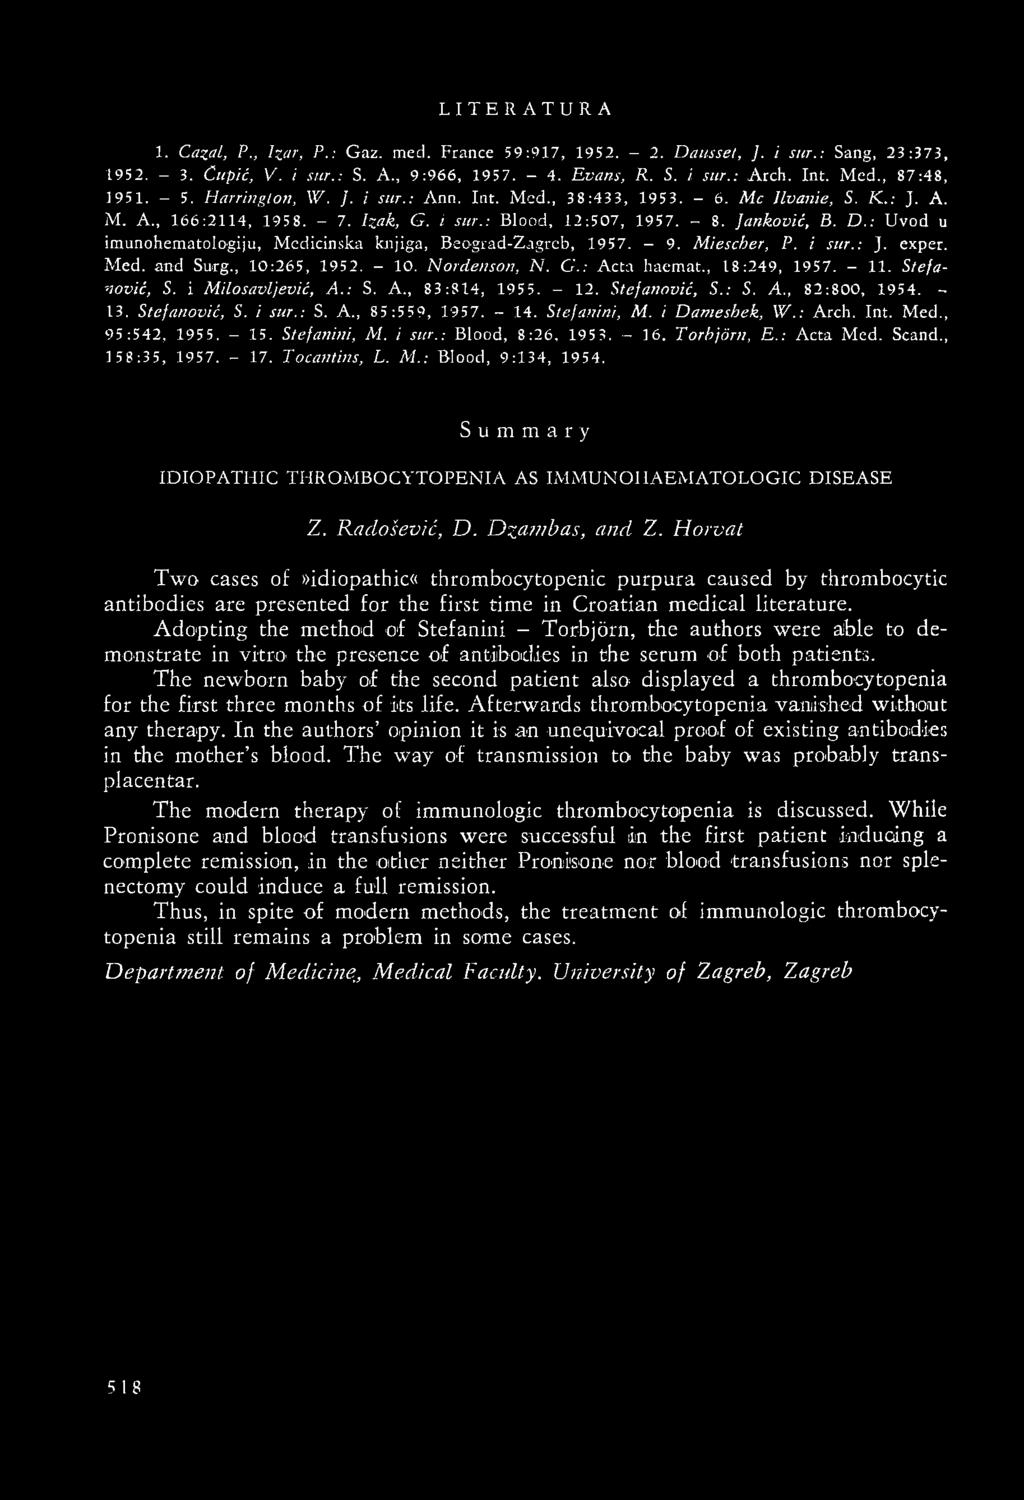 : Uvod u imunohematologiju, Medicinska knjiga, Beograd-Zagrcb, 1957. - 9. Miescher, P. i sur.: J. exper. Med. and Surg., 10:265, 1952. - 10. Nordenson, N. G.: Acta haemat., 18:249, 1957. - 11.